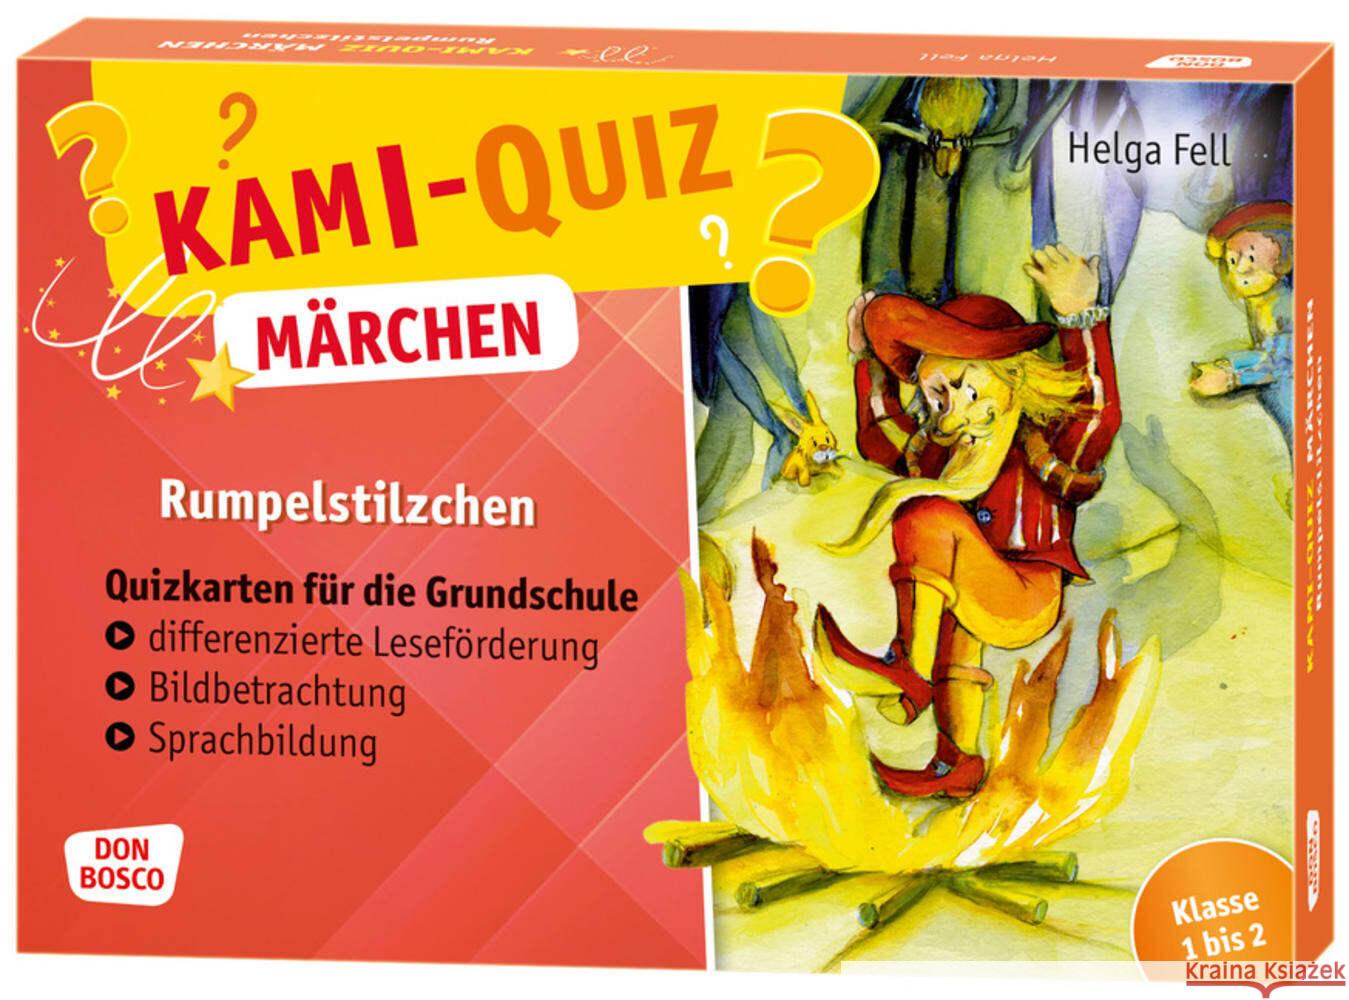 Kami-Quiz Märchen: Rumpelstilzchen Fell, Helga 4260179517419 Don Bosco Medien